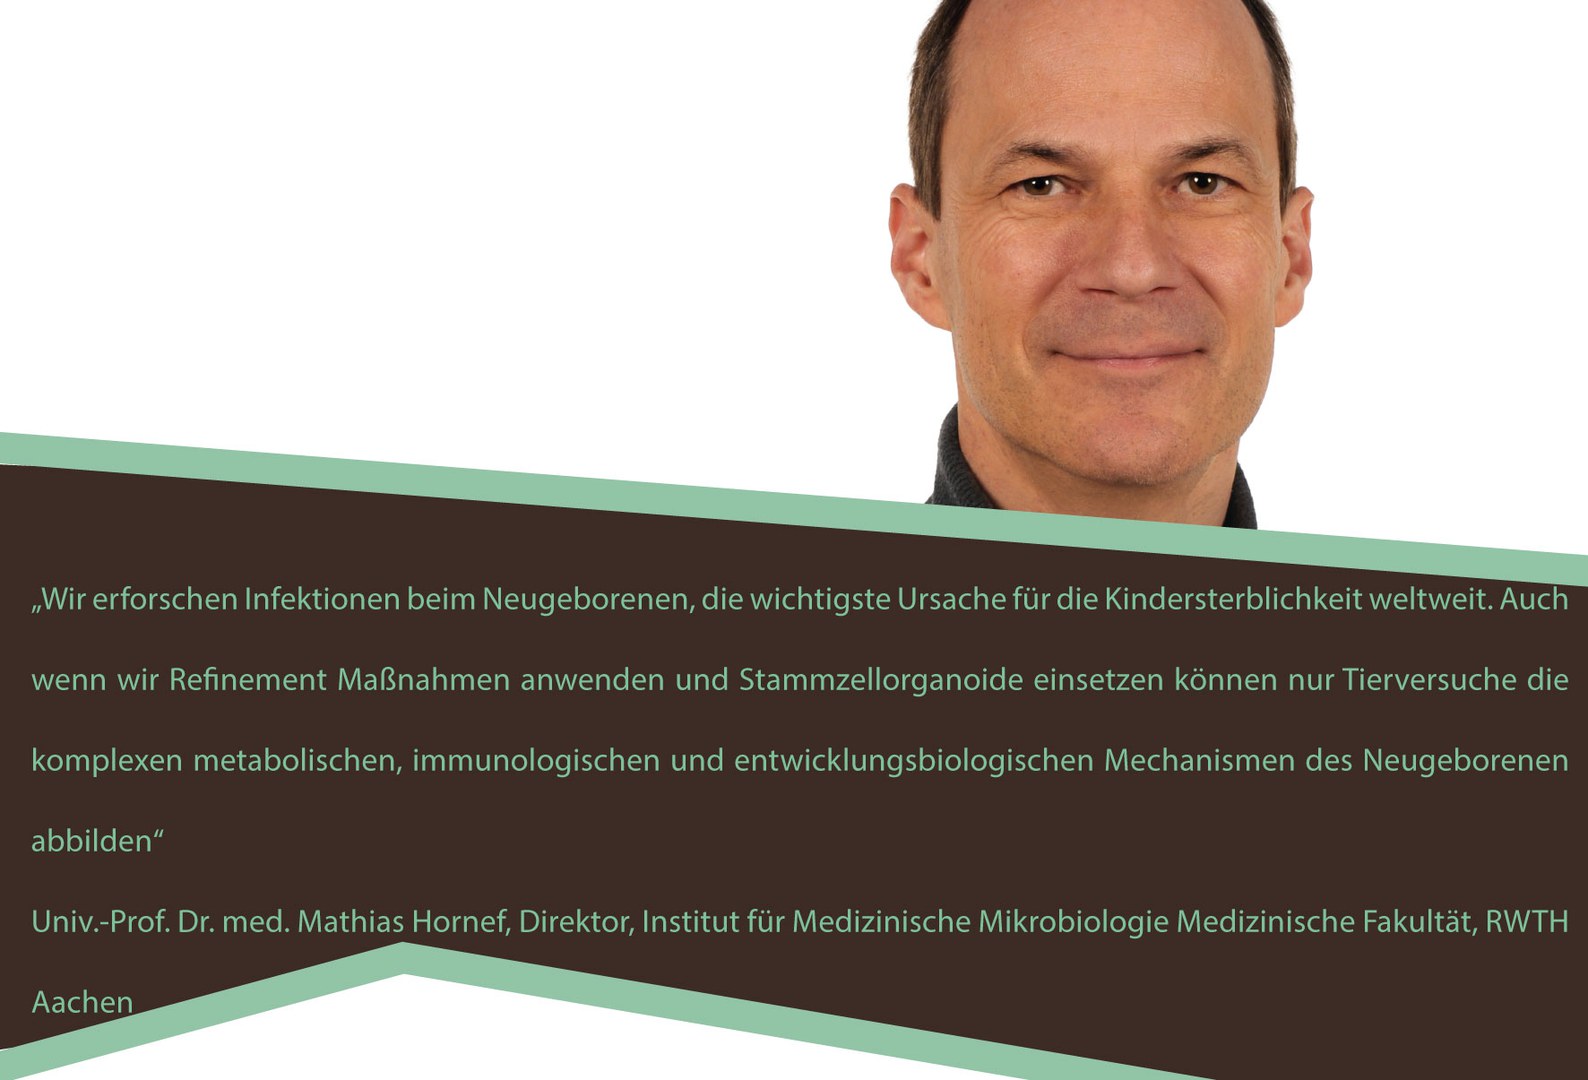 Univ.-Prof. Dr. med. Mathias Hornef